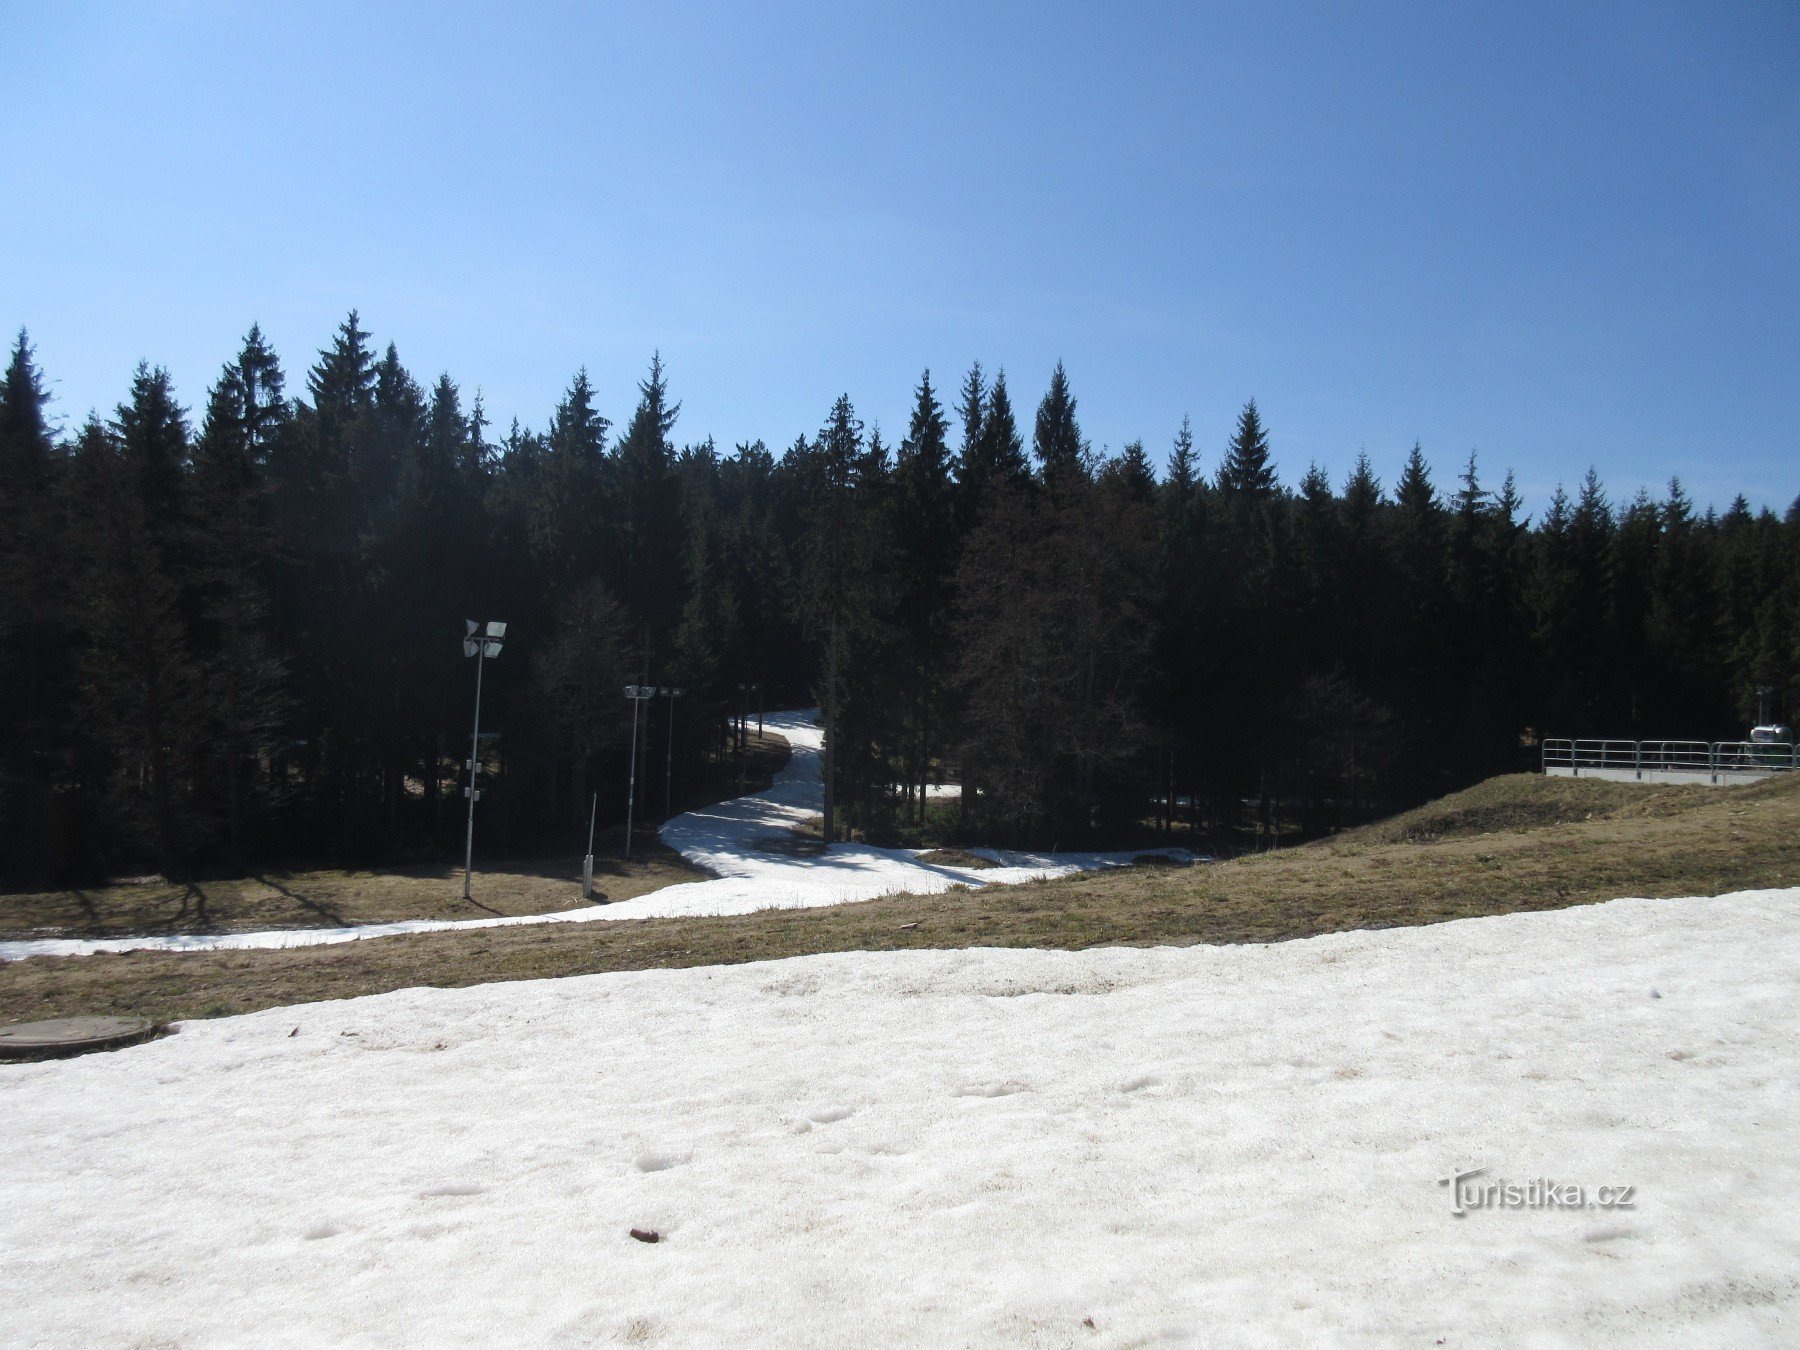 Nové Město – skiskydningskompleks Vysočina arena og vintersportens historie